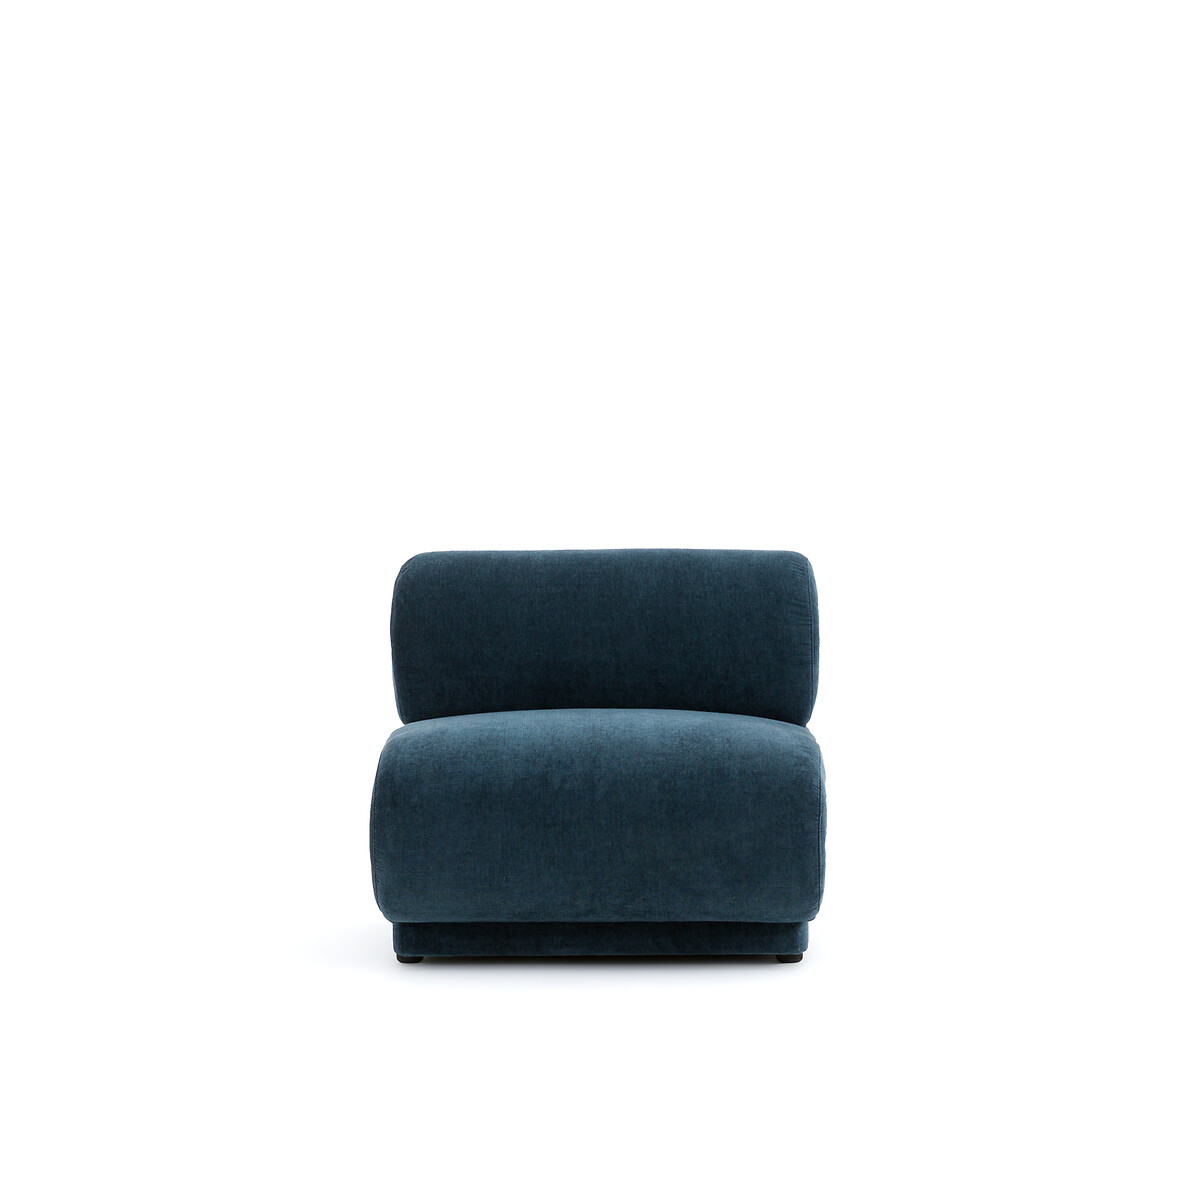 Кресло каминное модульное из рифленого велюра Teide 1-мест. синий кресло каминное модулируемое из велюра jonas 1 мест каштановый